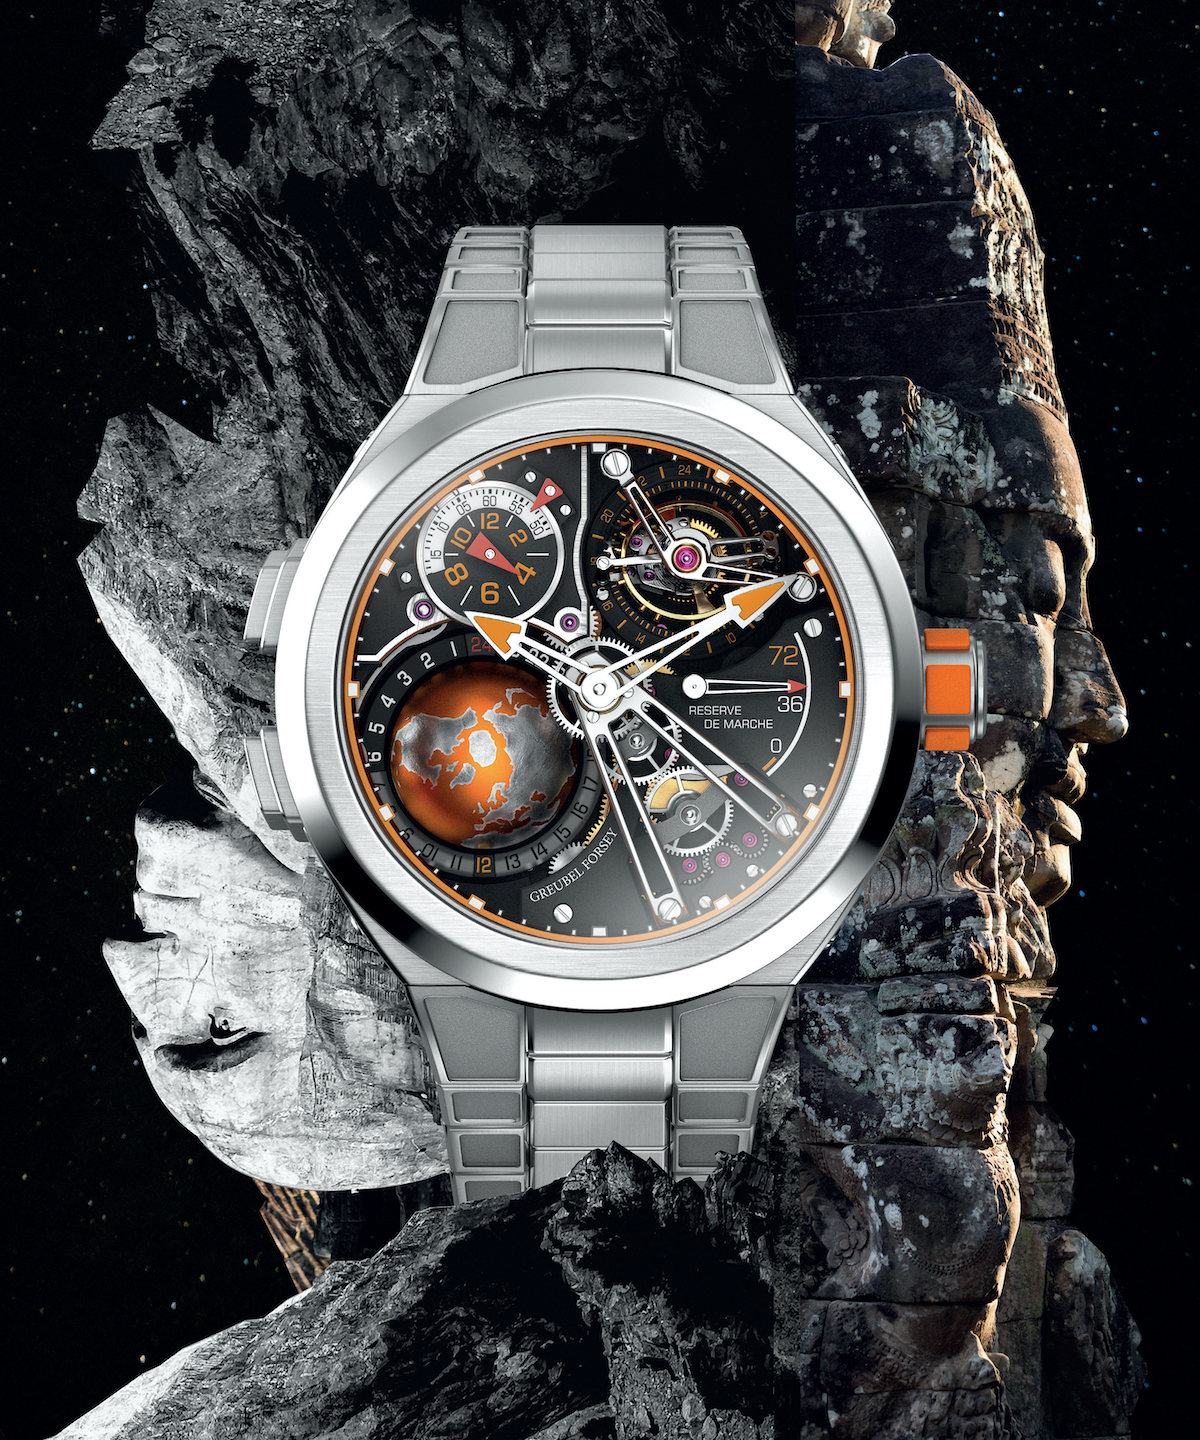 Đồng hồ World Timer và GMT: Bạn đam mê du lịch và mong muốn sở hữu một chiếc đồng hồ thông minh? Đồng hồ World Timer và GMT sẽ là lựa chọn hoàn hảo cho bạn. Hãy xem hình ảnh để khám phá những tính năng đặc biệt của đồng hồ này và cách sử dụng chúng.